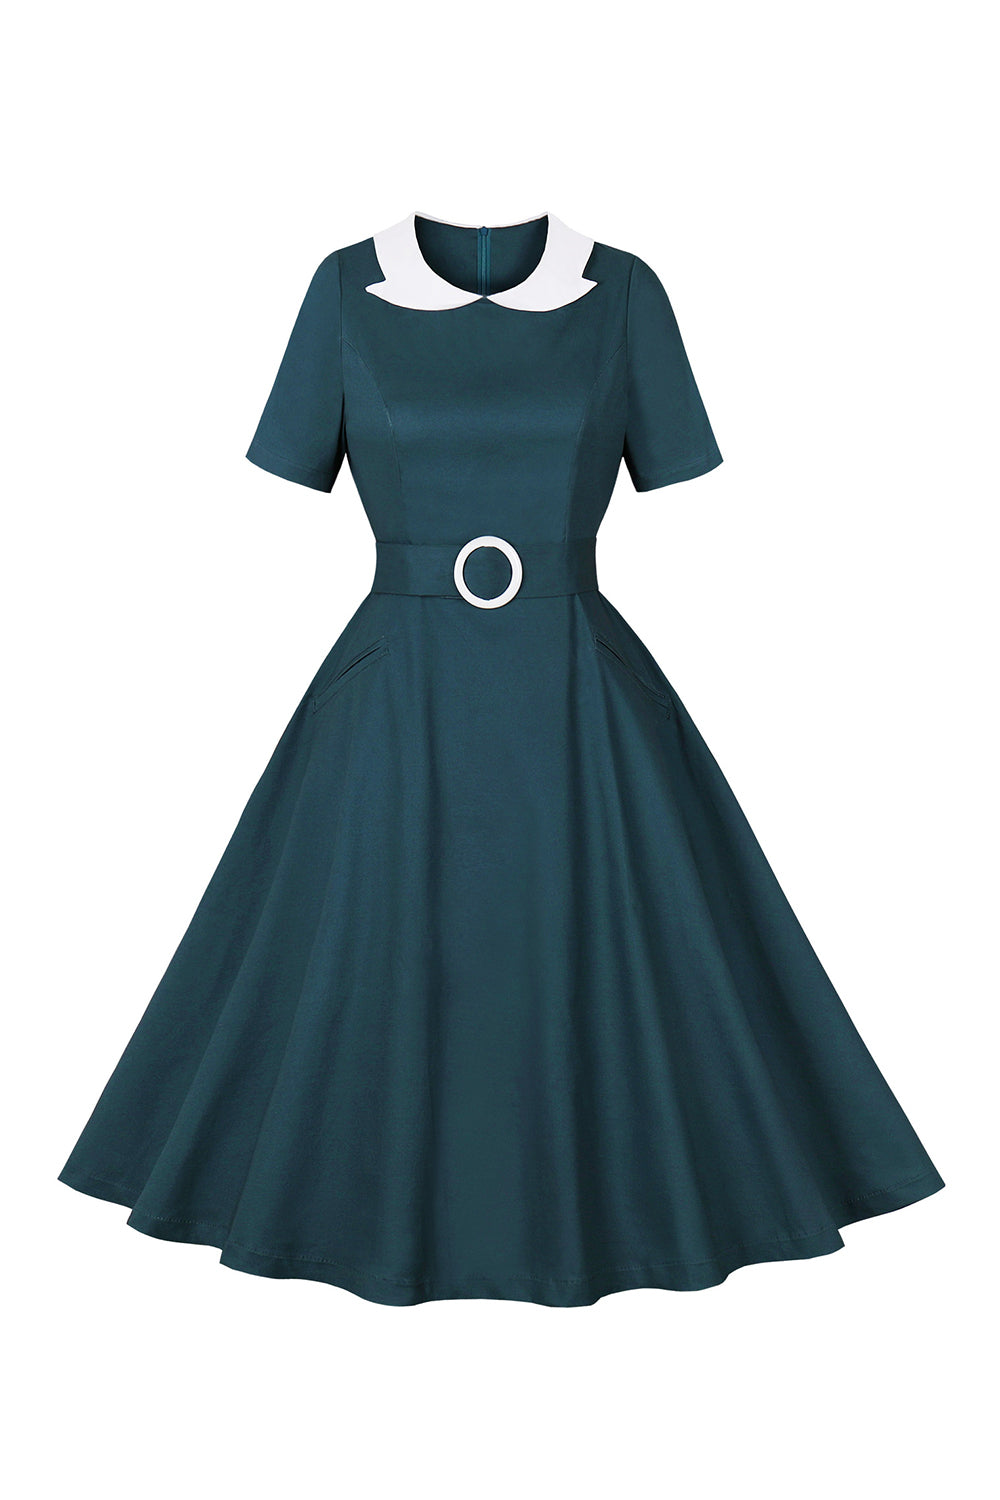 Pauwblauw A Line Swing jaren 1950 jurk met riem